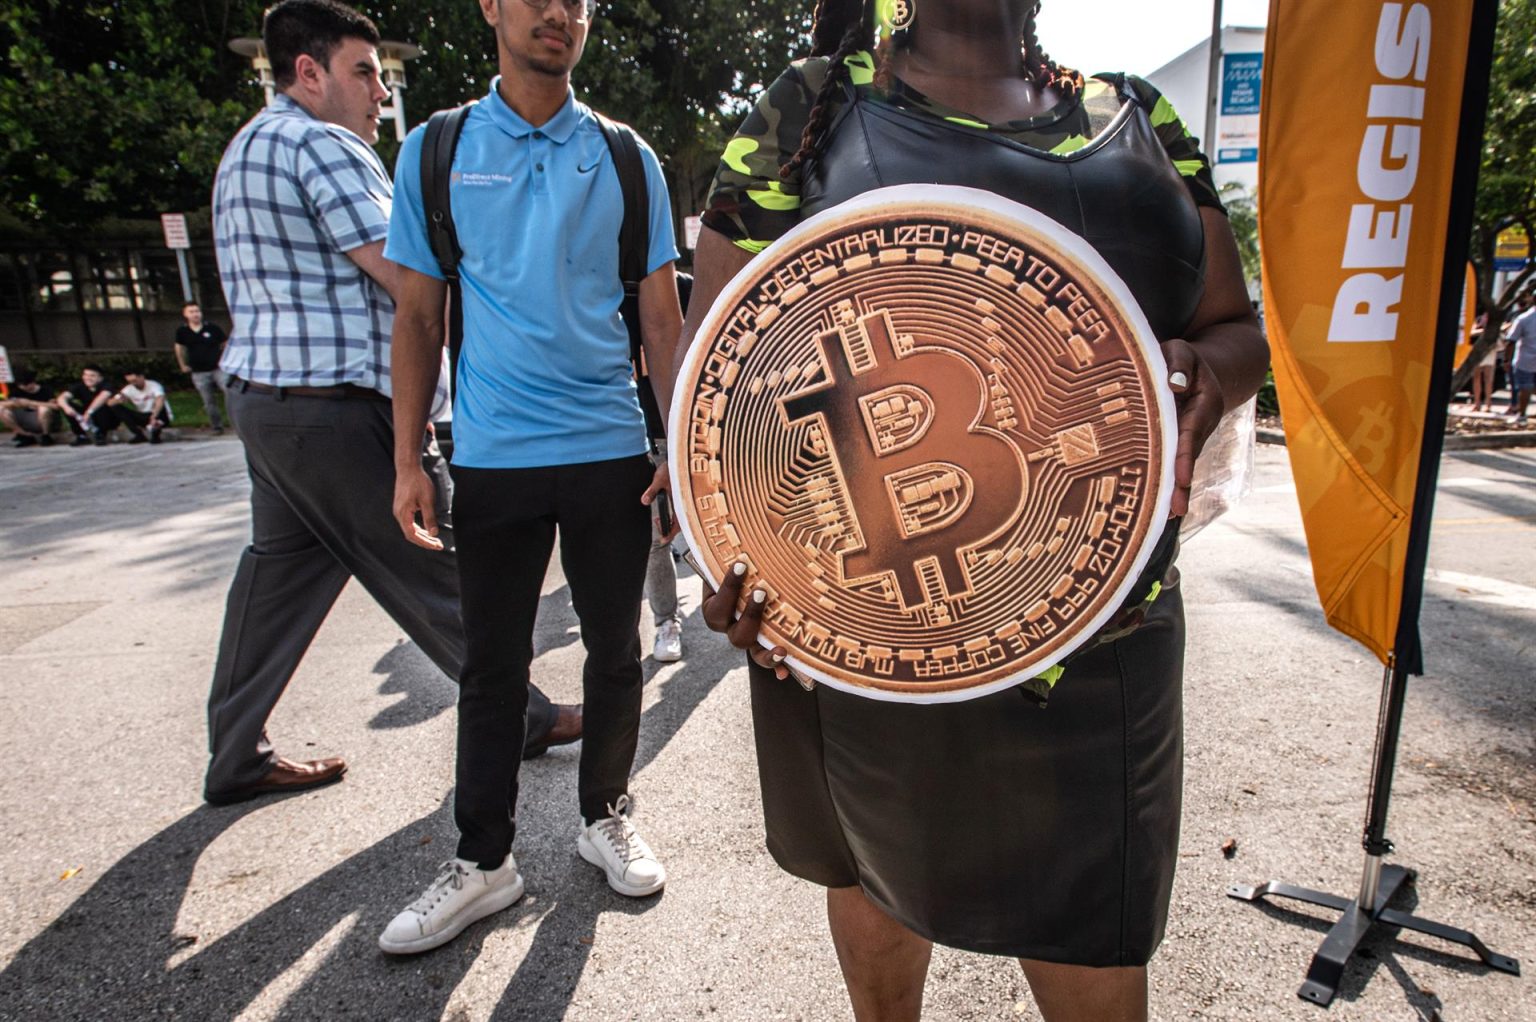 Fotografía de archivo fechada el 6 de abril de 2022 que muestra a una persona sostiene una enorme bitcoin mientras espera en fila para entrar a la conferencia Bitcoin en el Centro de Convenciones de Miami Beach, Florida (EE. UU). EFE/Giorgio Viera